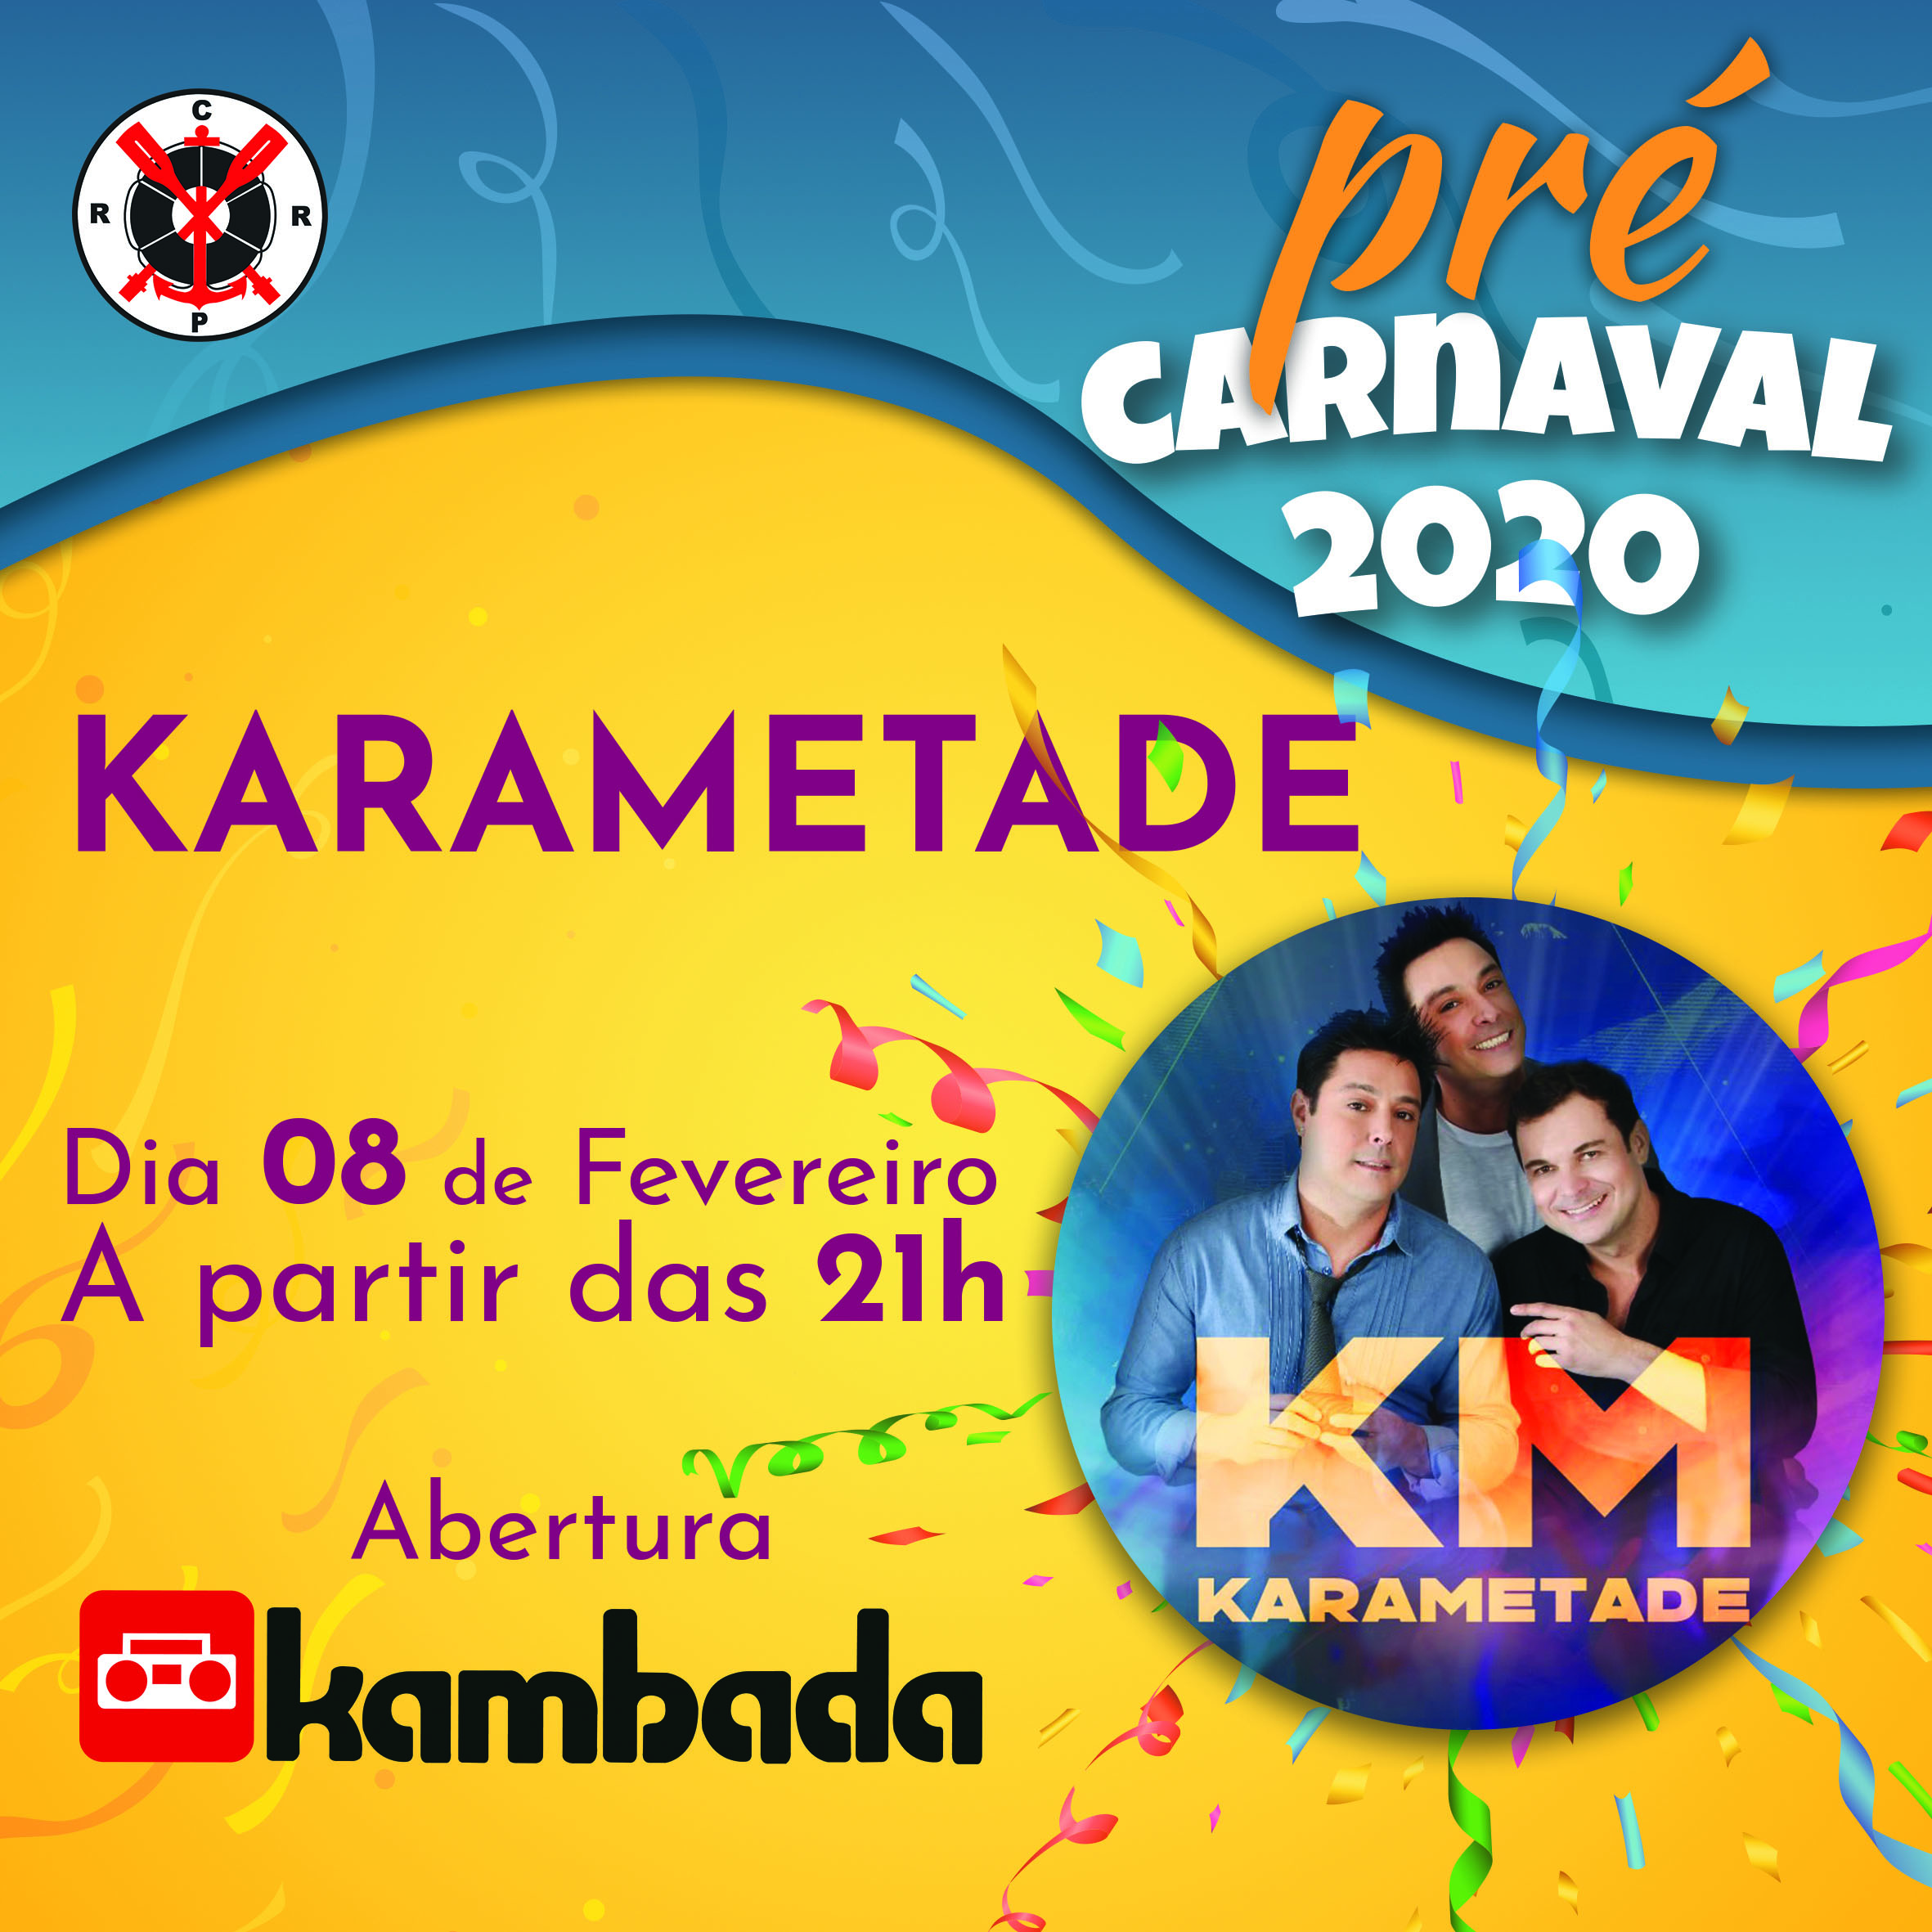 Pré-Carnaval 2020 – 08/02